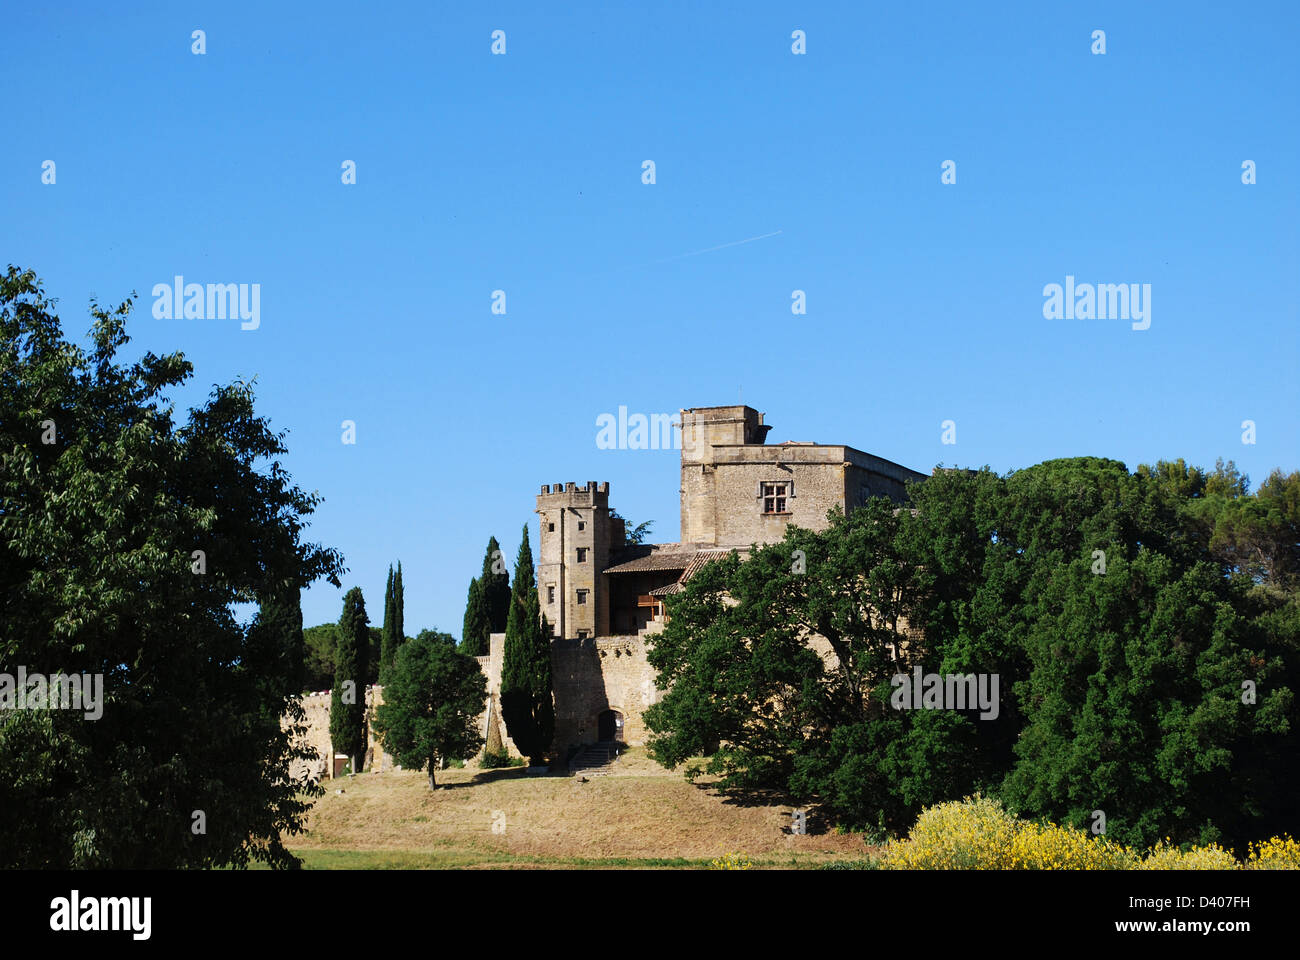 Alte Burg und Hügel-Landschaft in Lourmarin Dorf, Departement Vaucluse, Provence, Frankreich Stockfoto